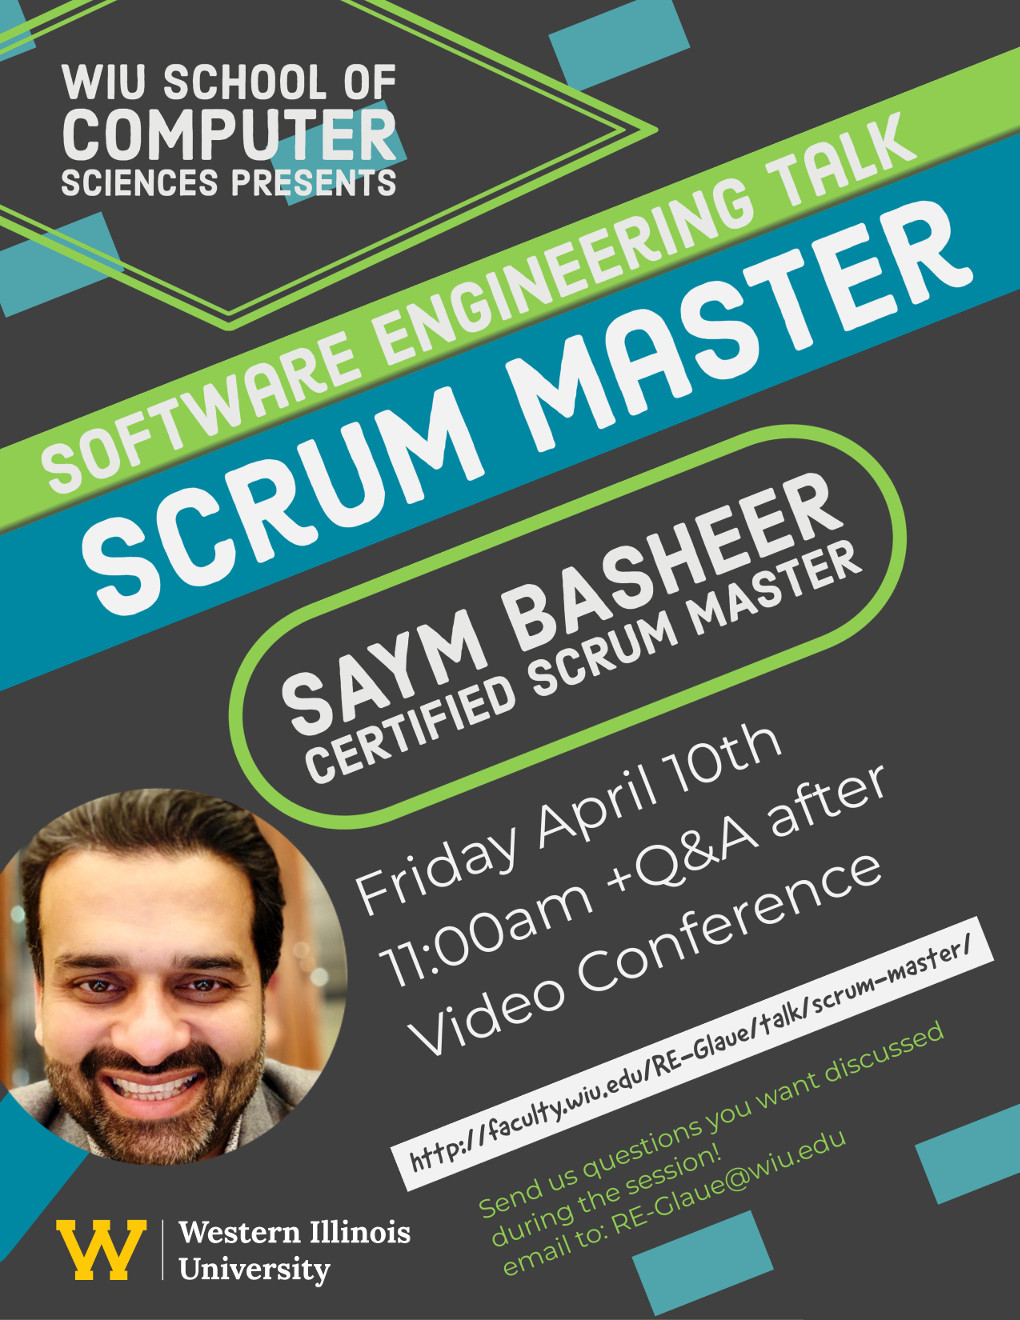 Scrum Master Talk March 20, 2020